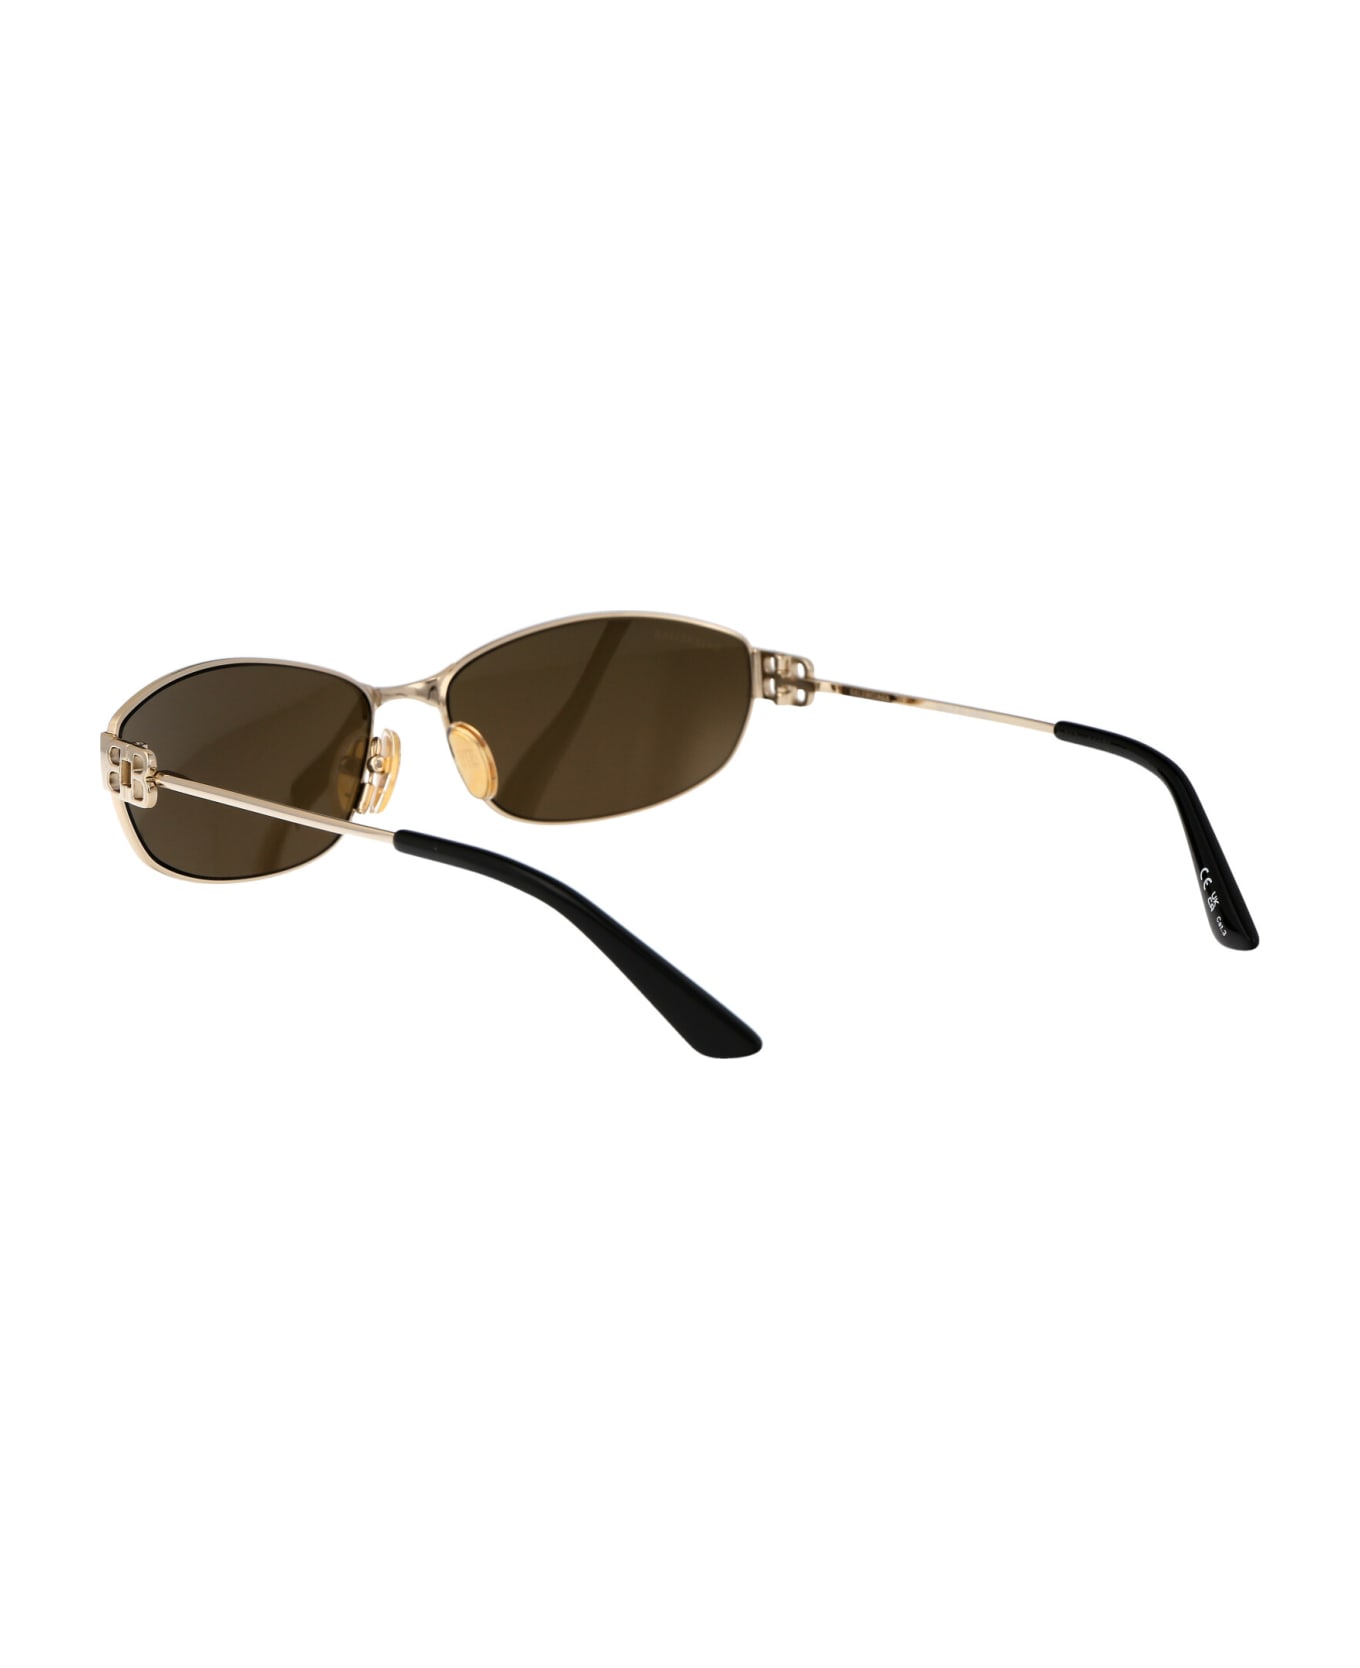 Balenciaga Eyewear Bb0336s Sunglasses - 003 GOLD GOLD BRONZE